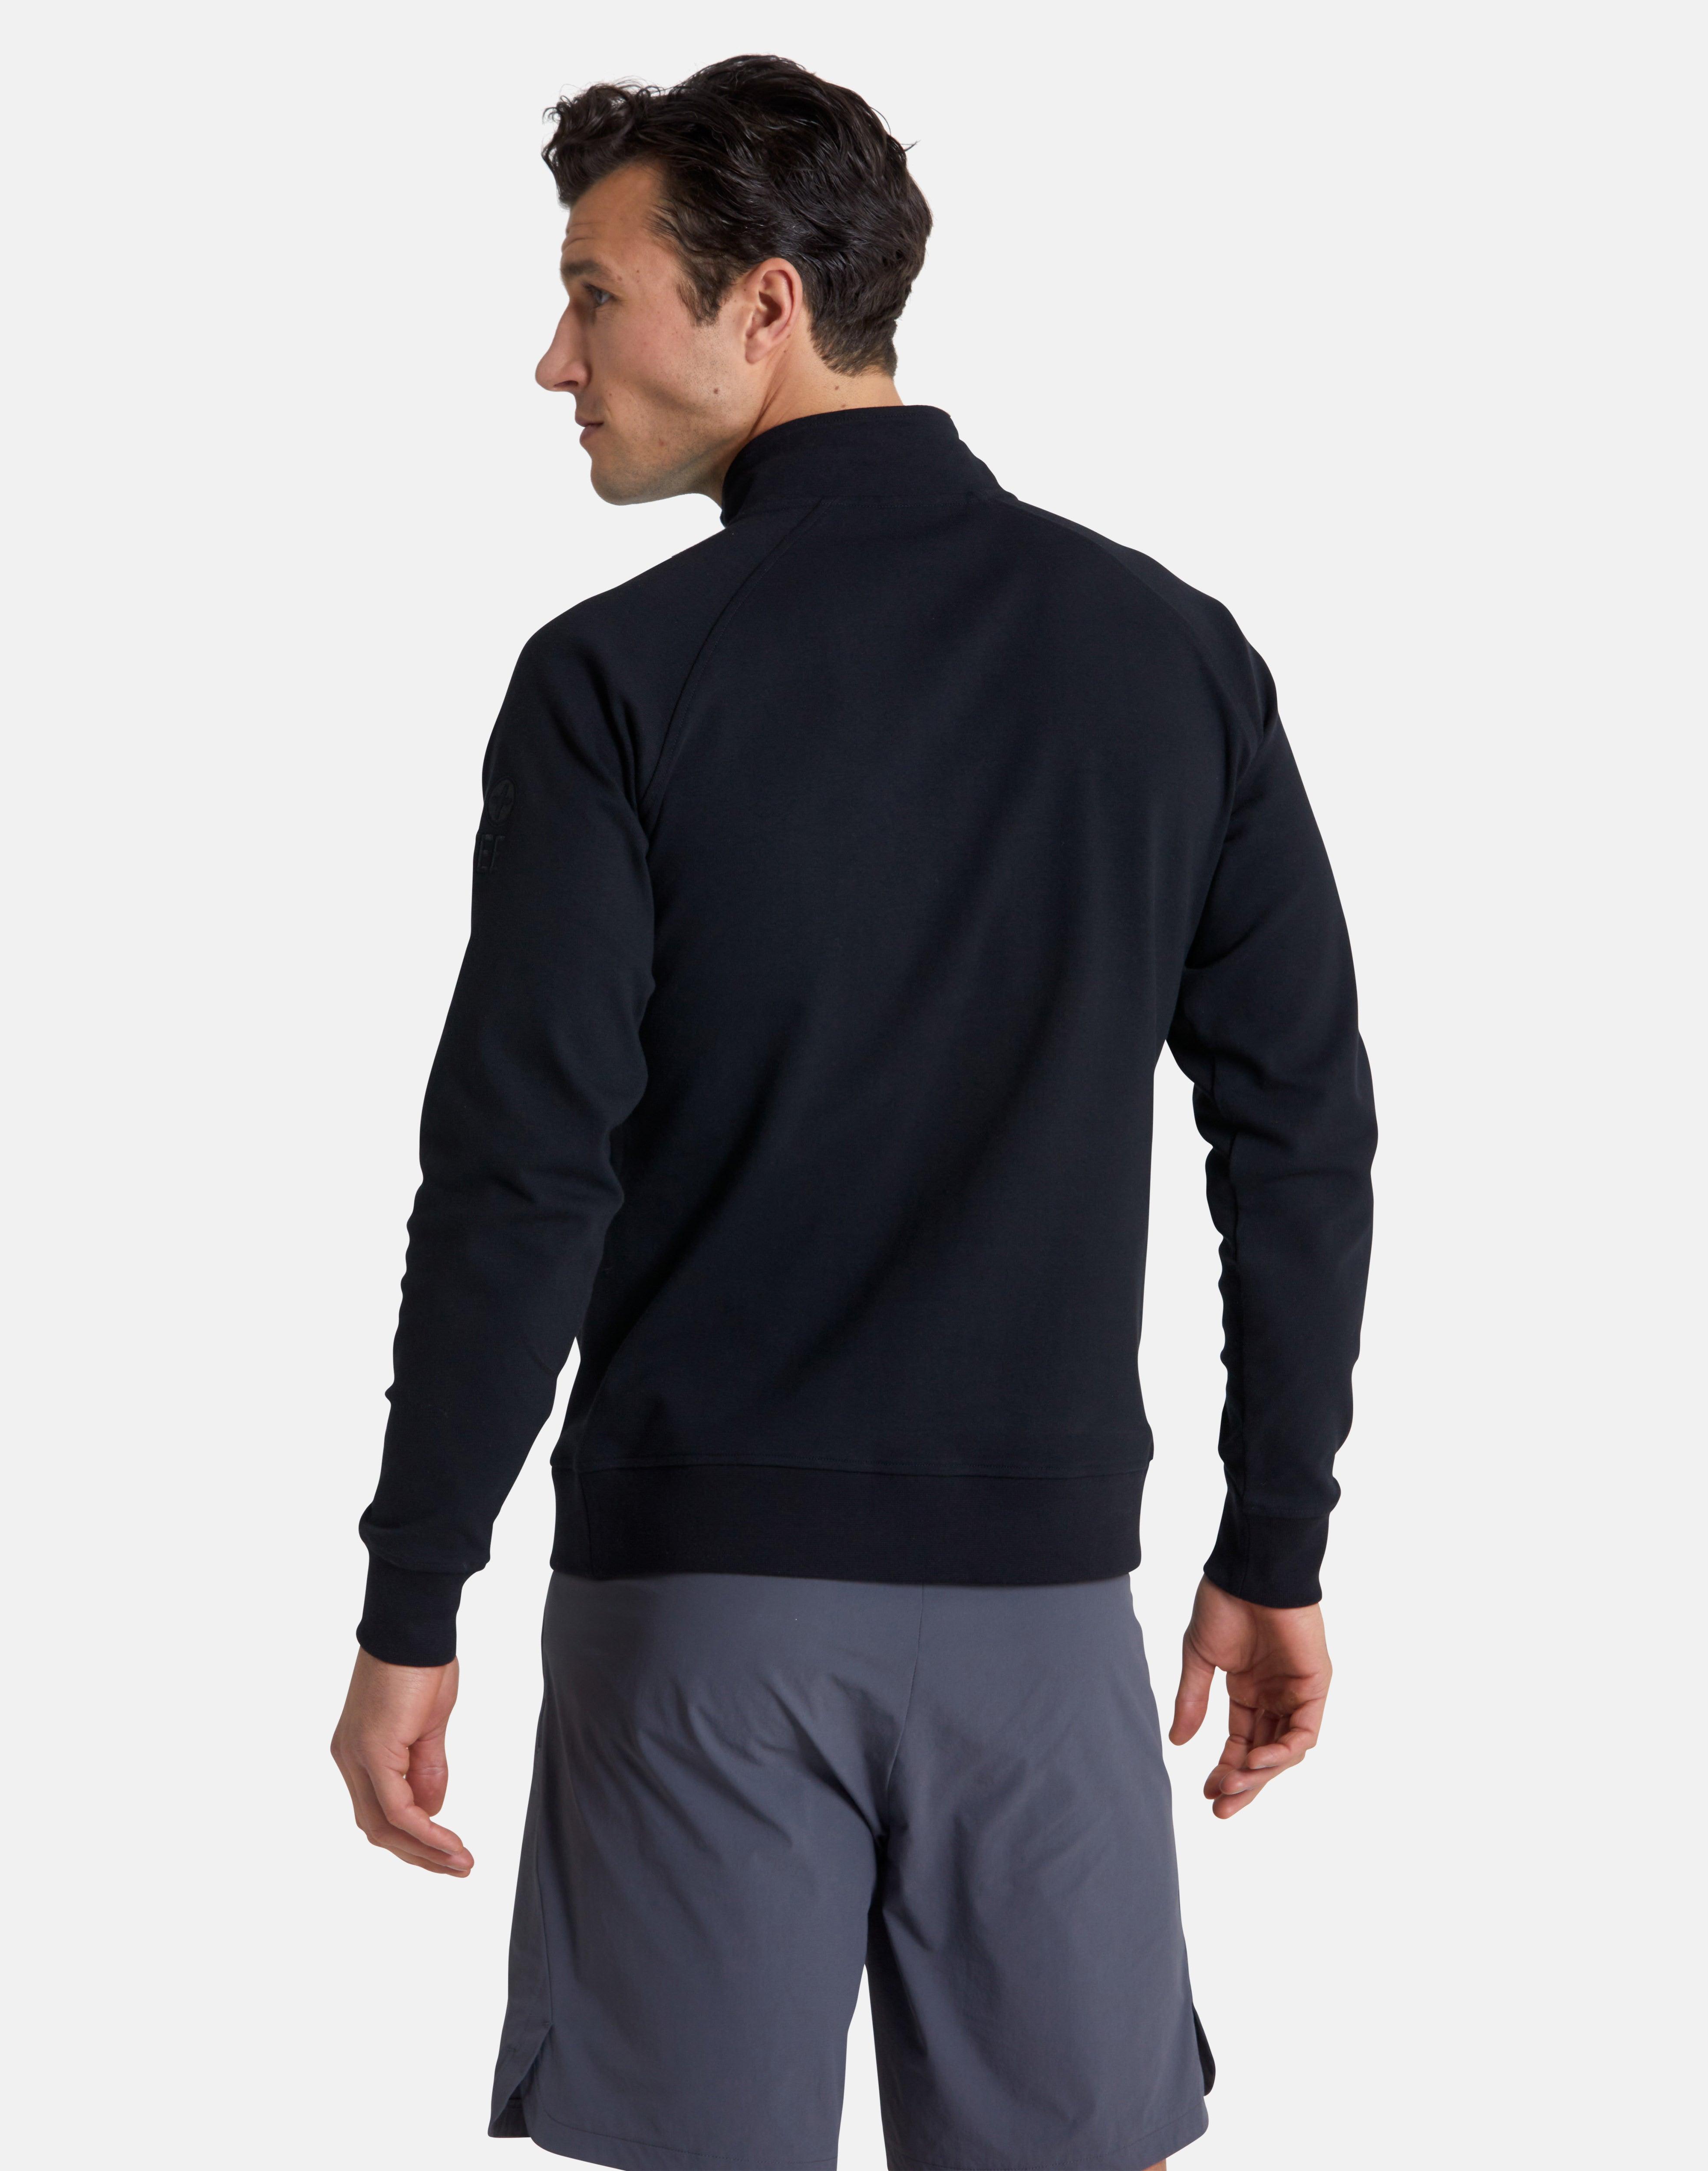 Essential Half Zip in Black - Sweatshirts - Gym+Coffee